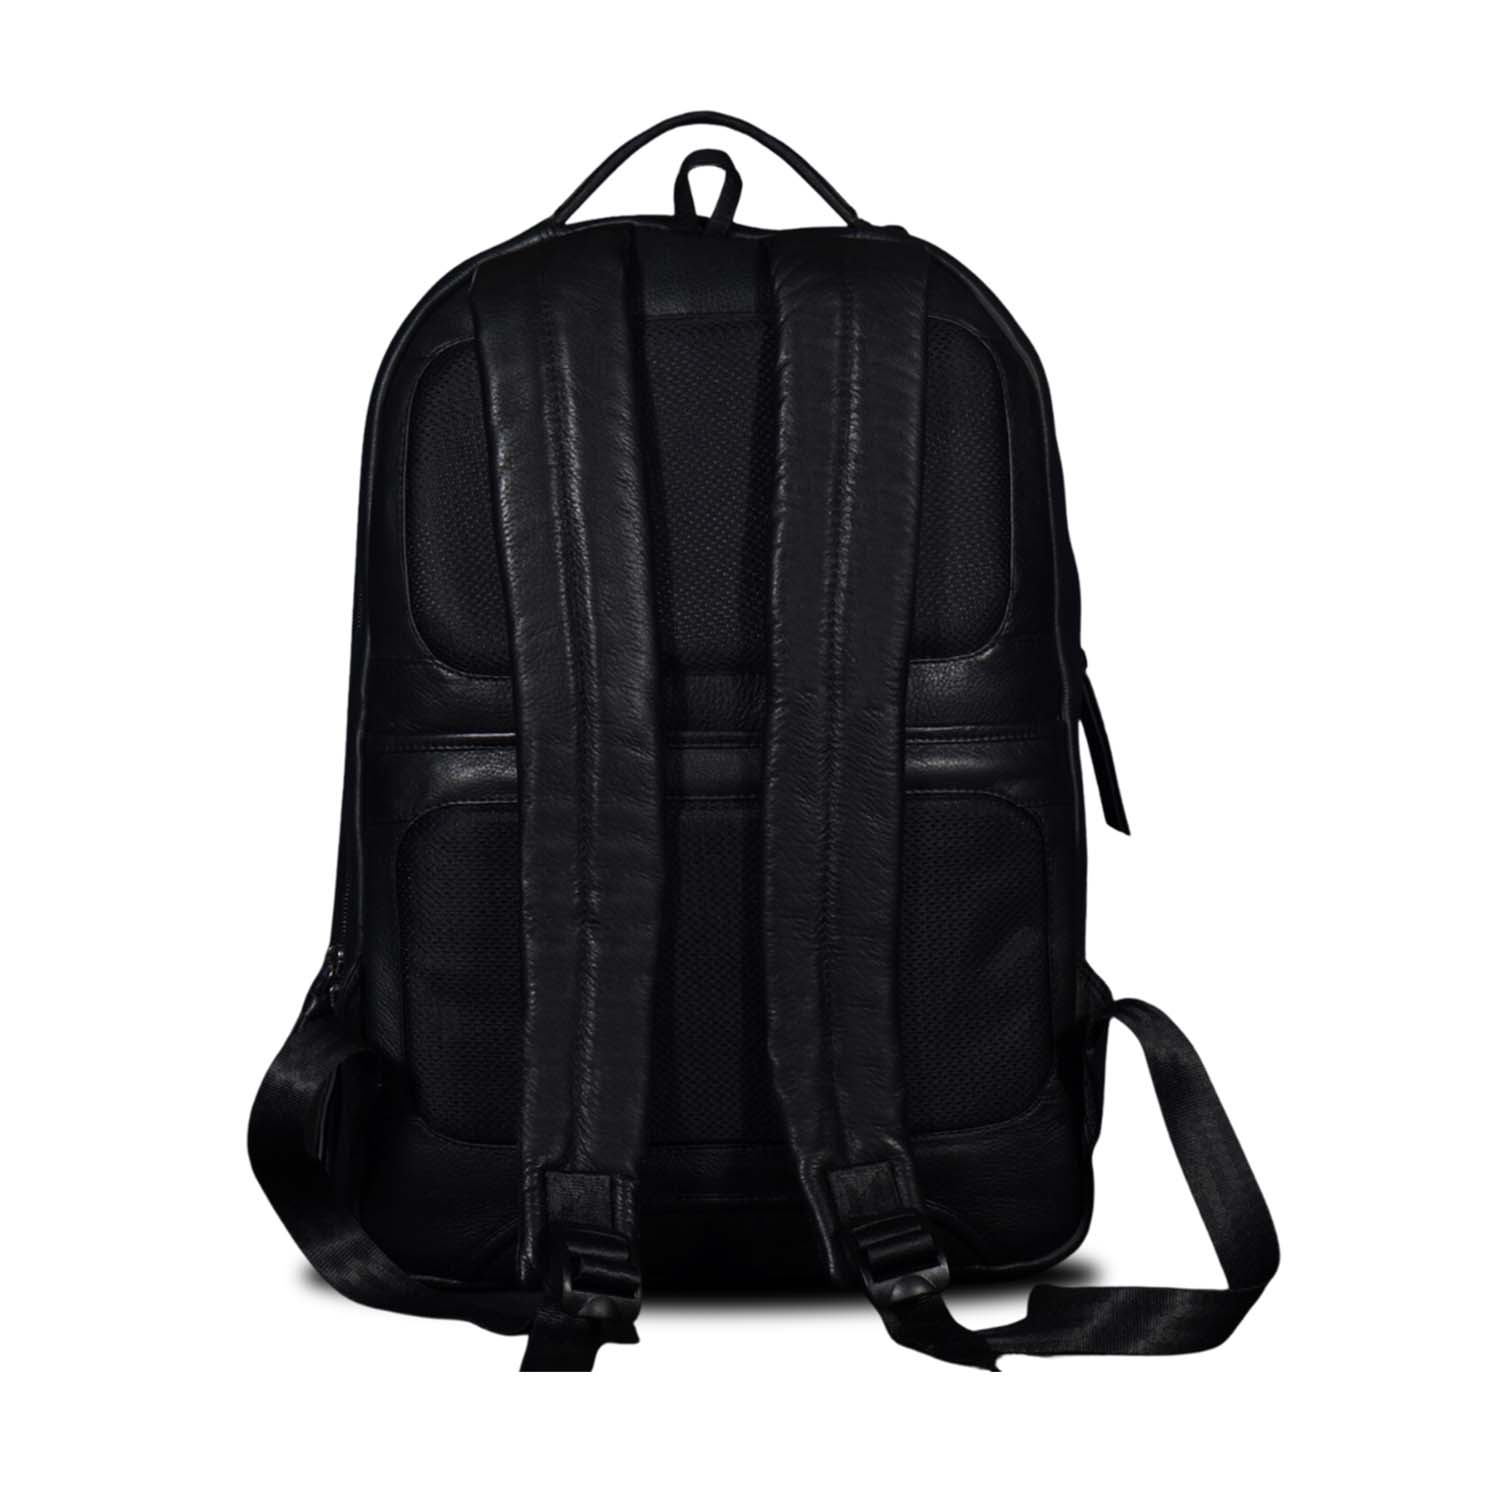 Sebastian - The Backpack - Black - Tortoise  